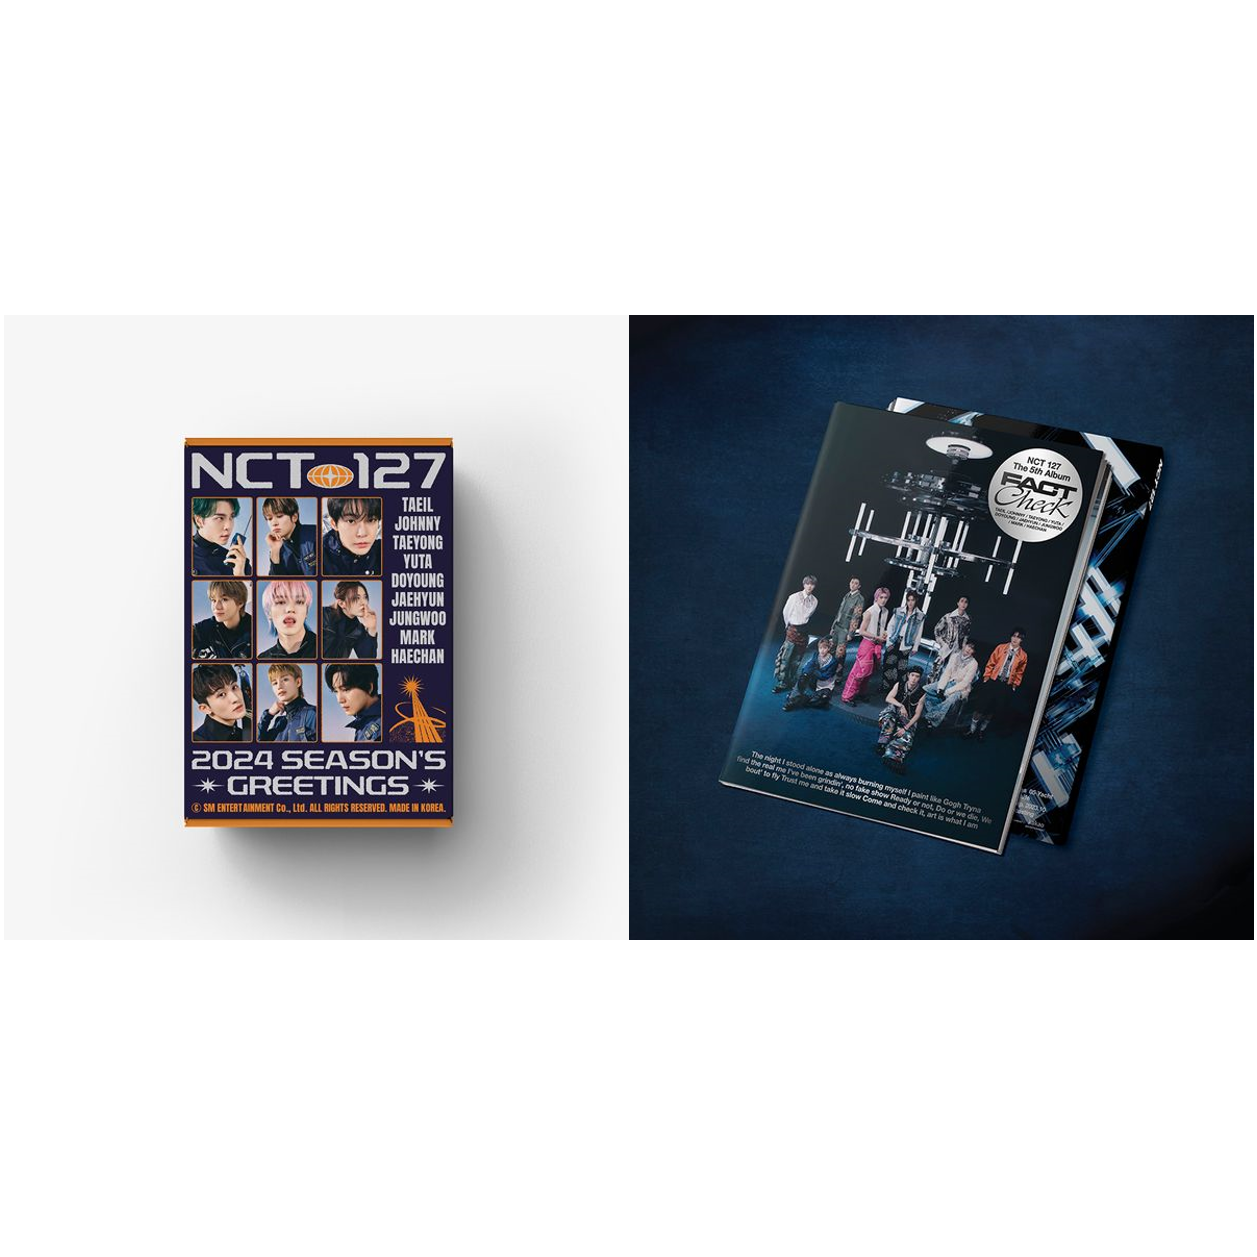 [全款][台历+专辑] [套装] (+10.9签售卡) [Ktown4u Special Gift] [NCT 127] 2024 SEASON'S GREETINGS+NCT 127 - The 5th Album [Fact Check] (Chandelier Ver.) _郑在玹吧_JaeHyunBar